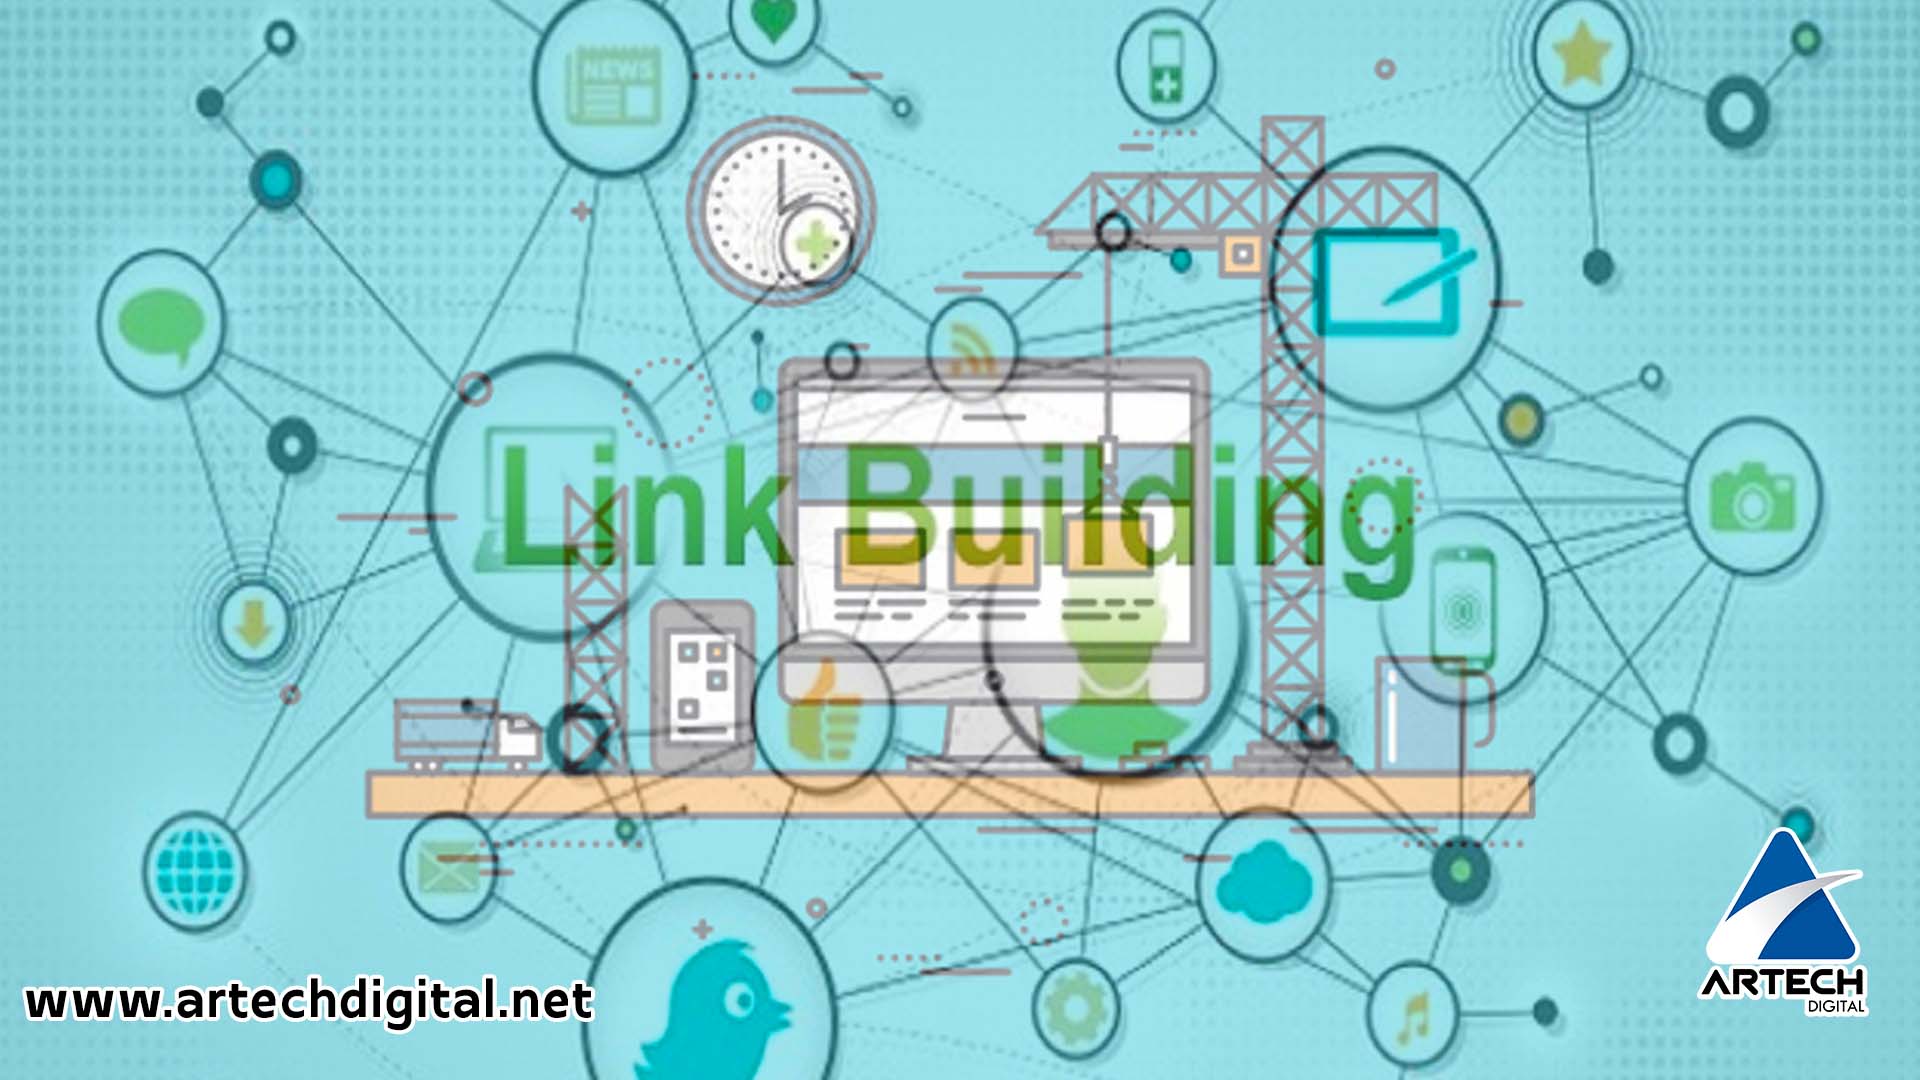 Artech Digital - Estrategia SEO de Linkbuilding